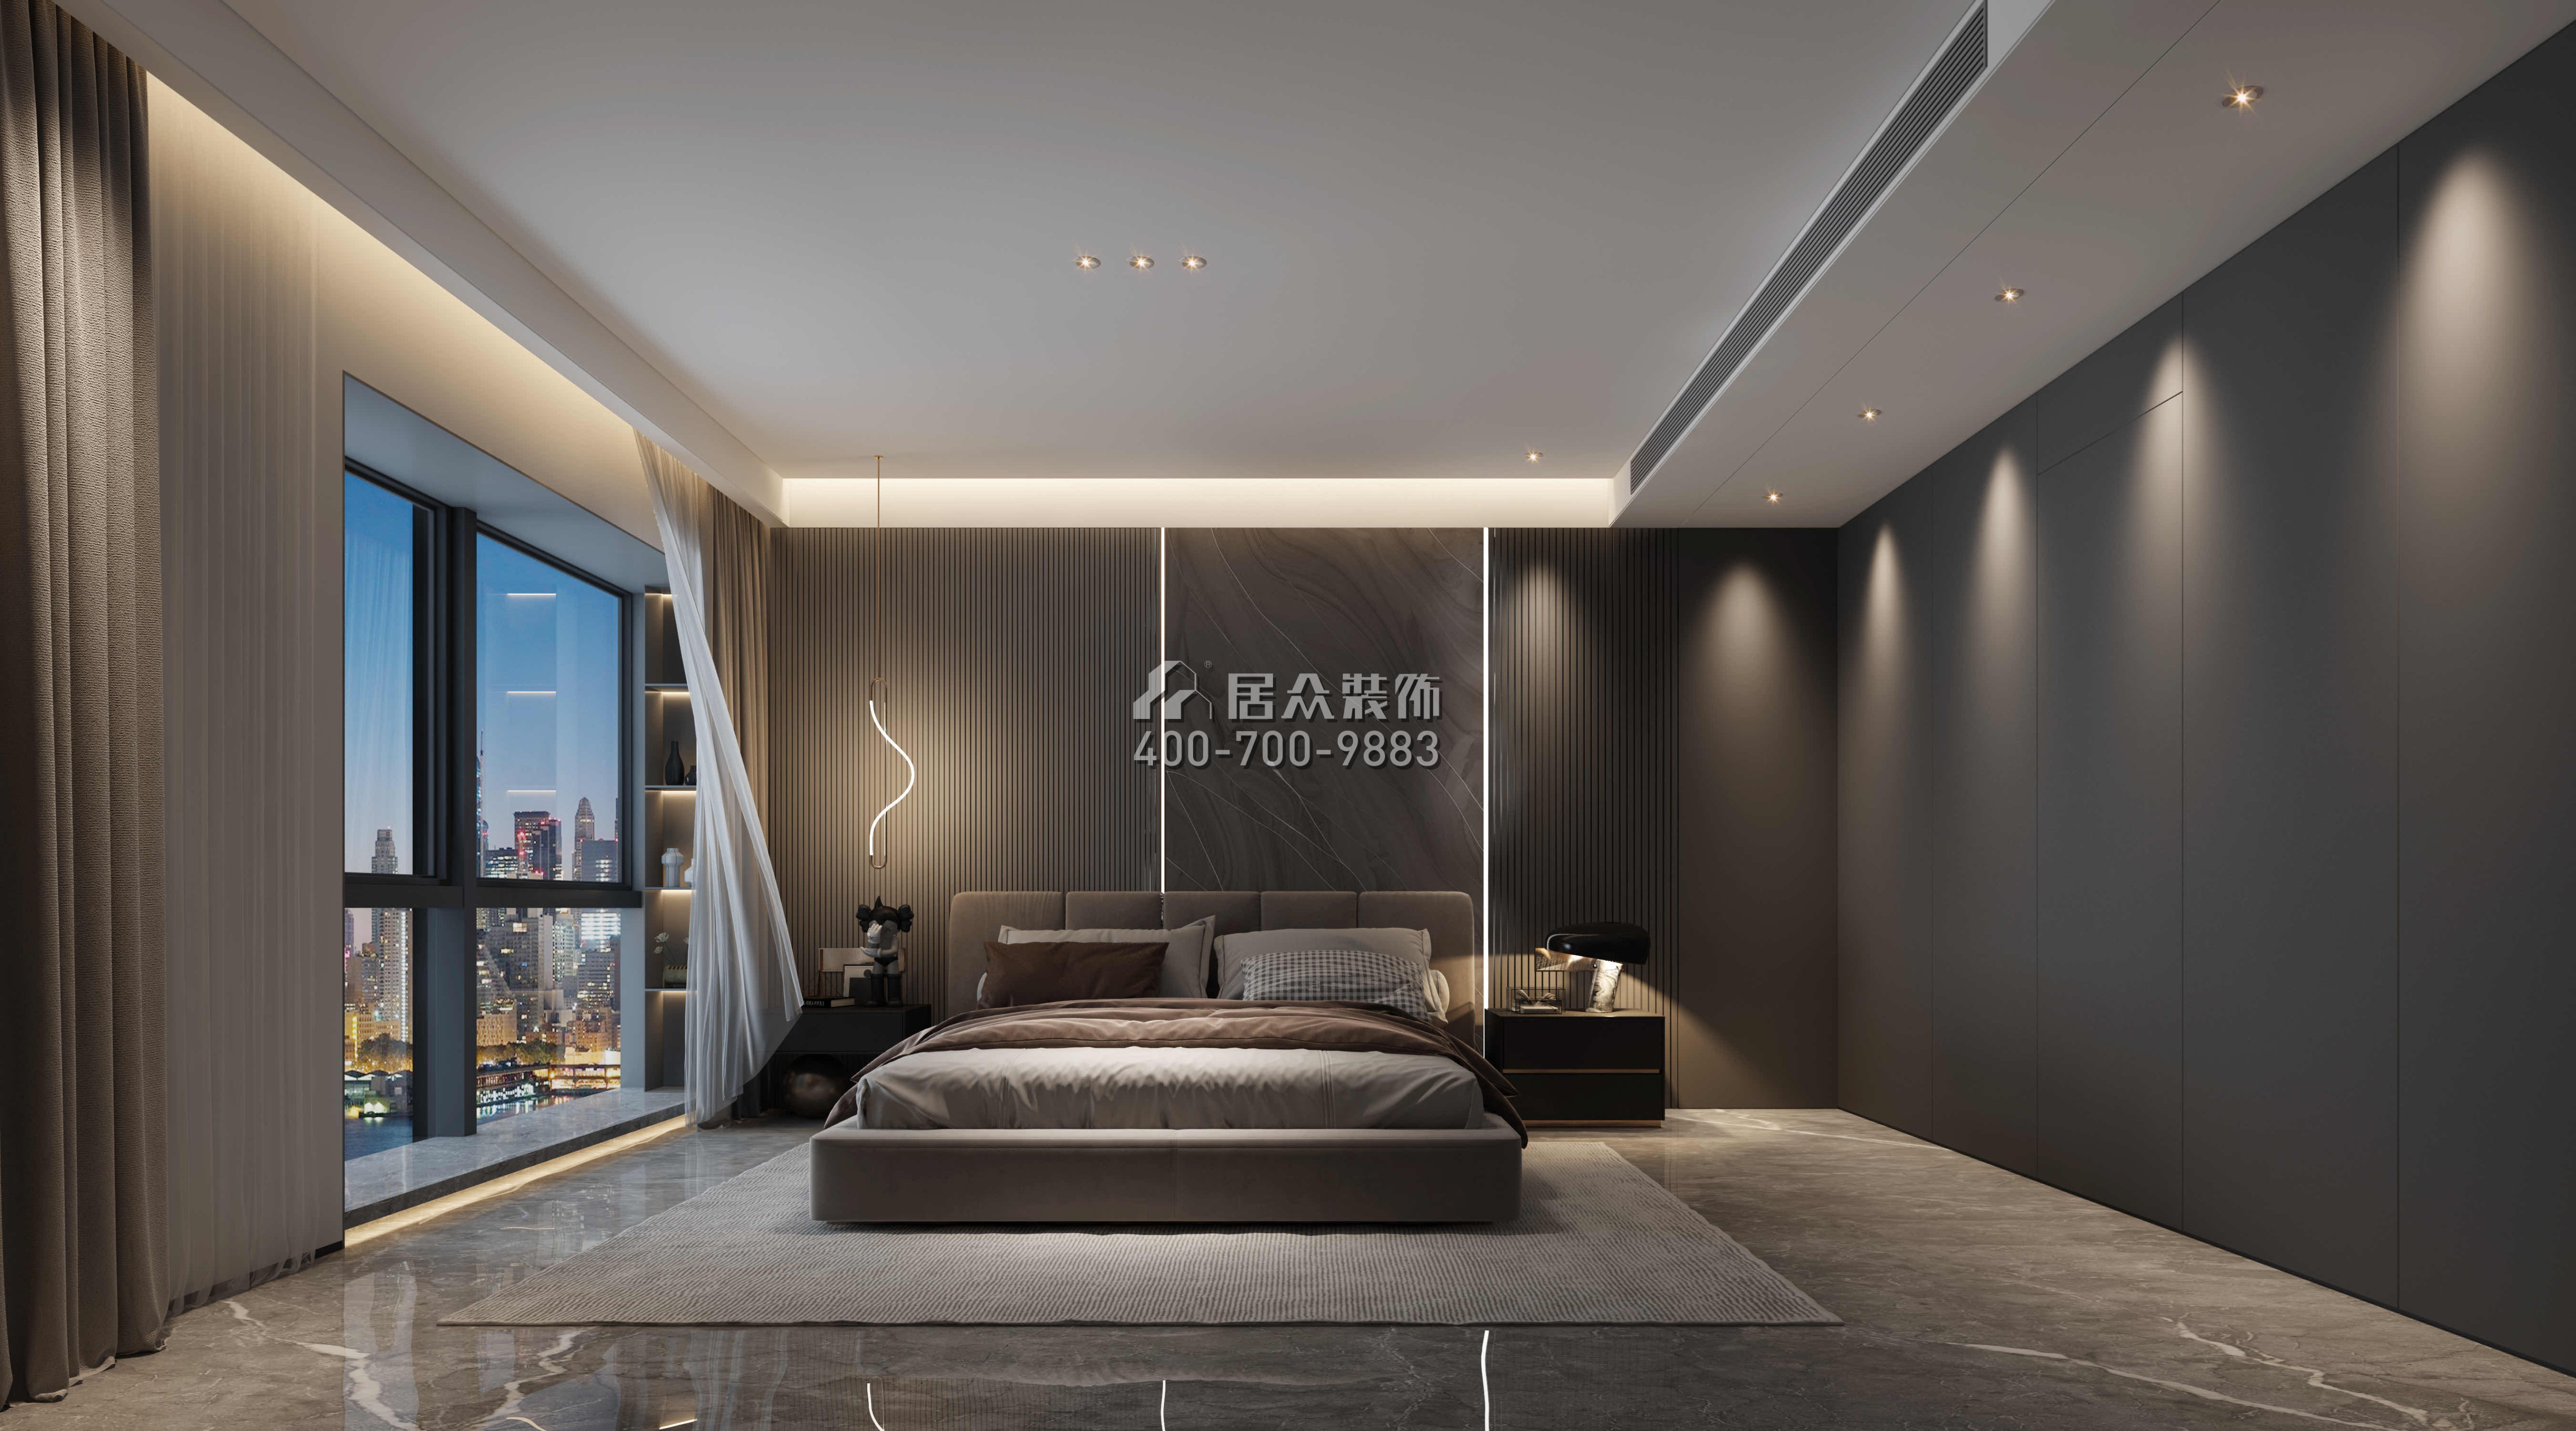 仁山智水350平方米現代簡約風格平層戶型臥室裝修效果圖